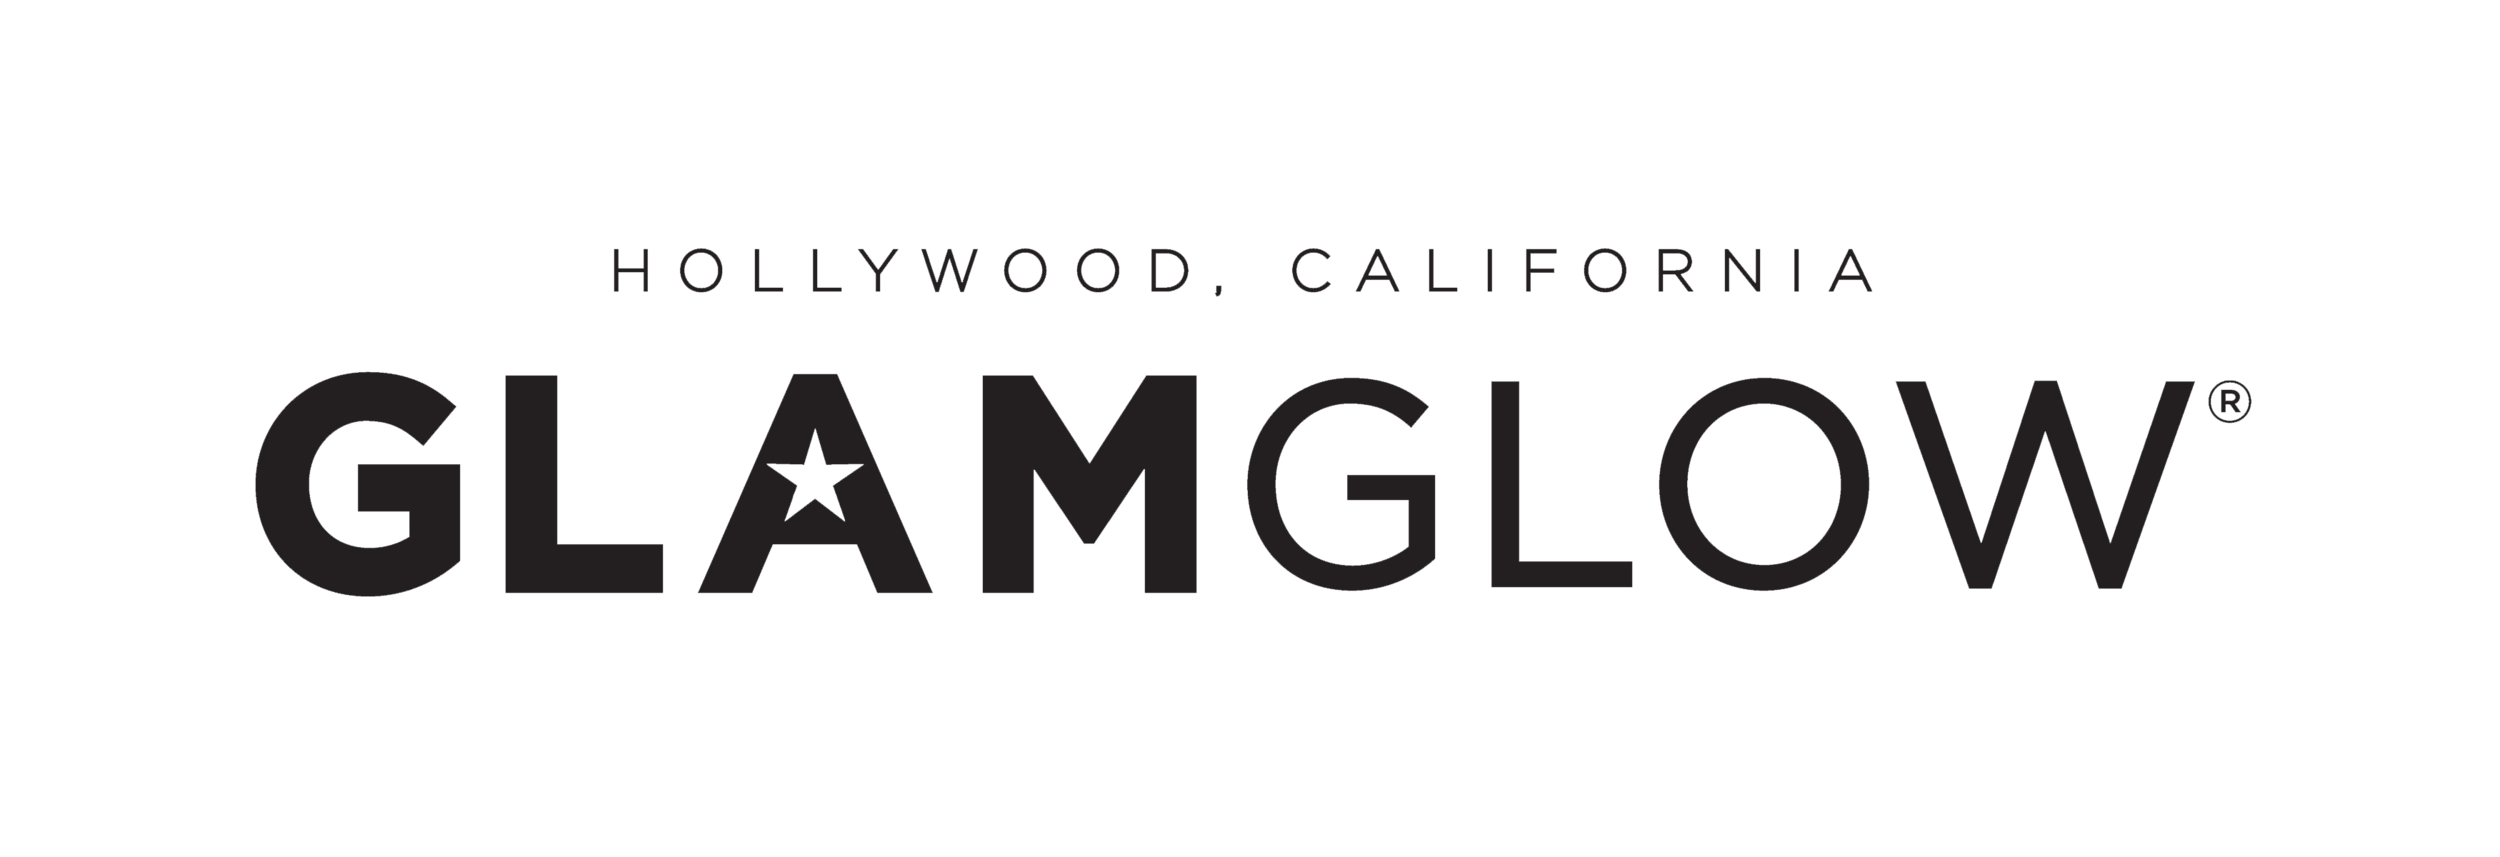 GLAMGLOW_logo.png